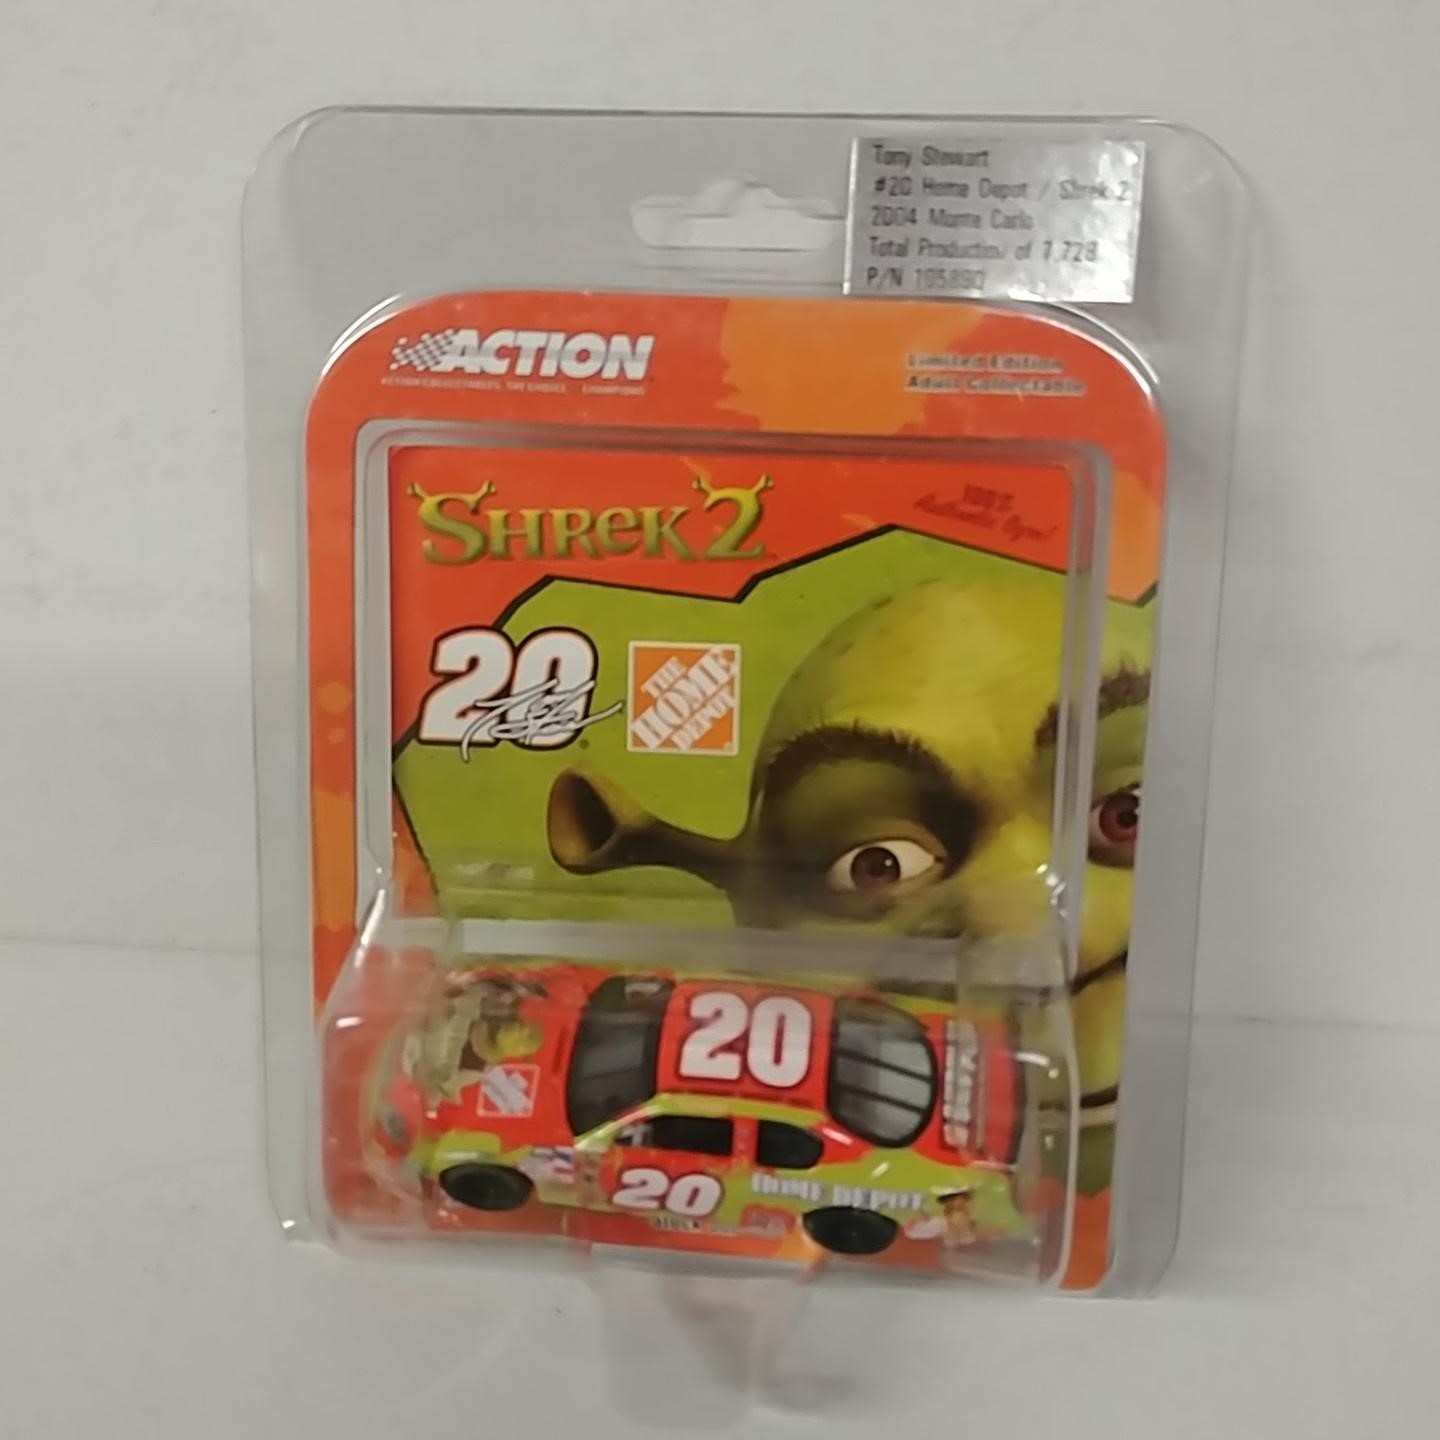 2004 Tony Stewart 1/64th Home Depot "Shrek 2" car